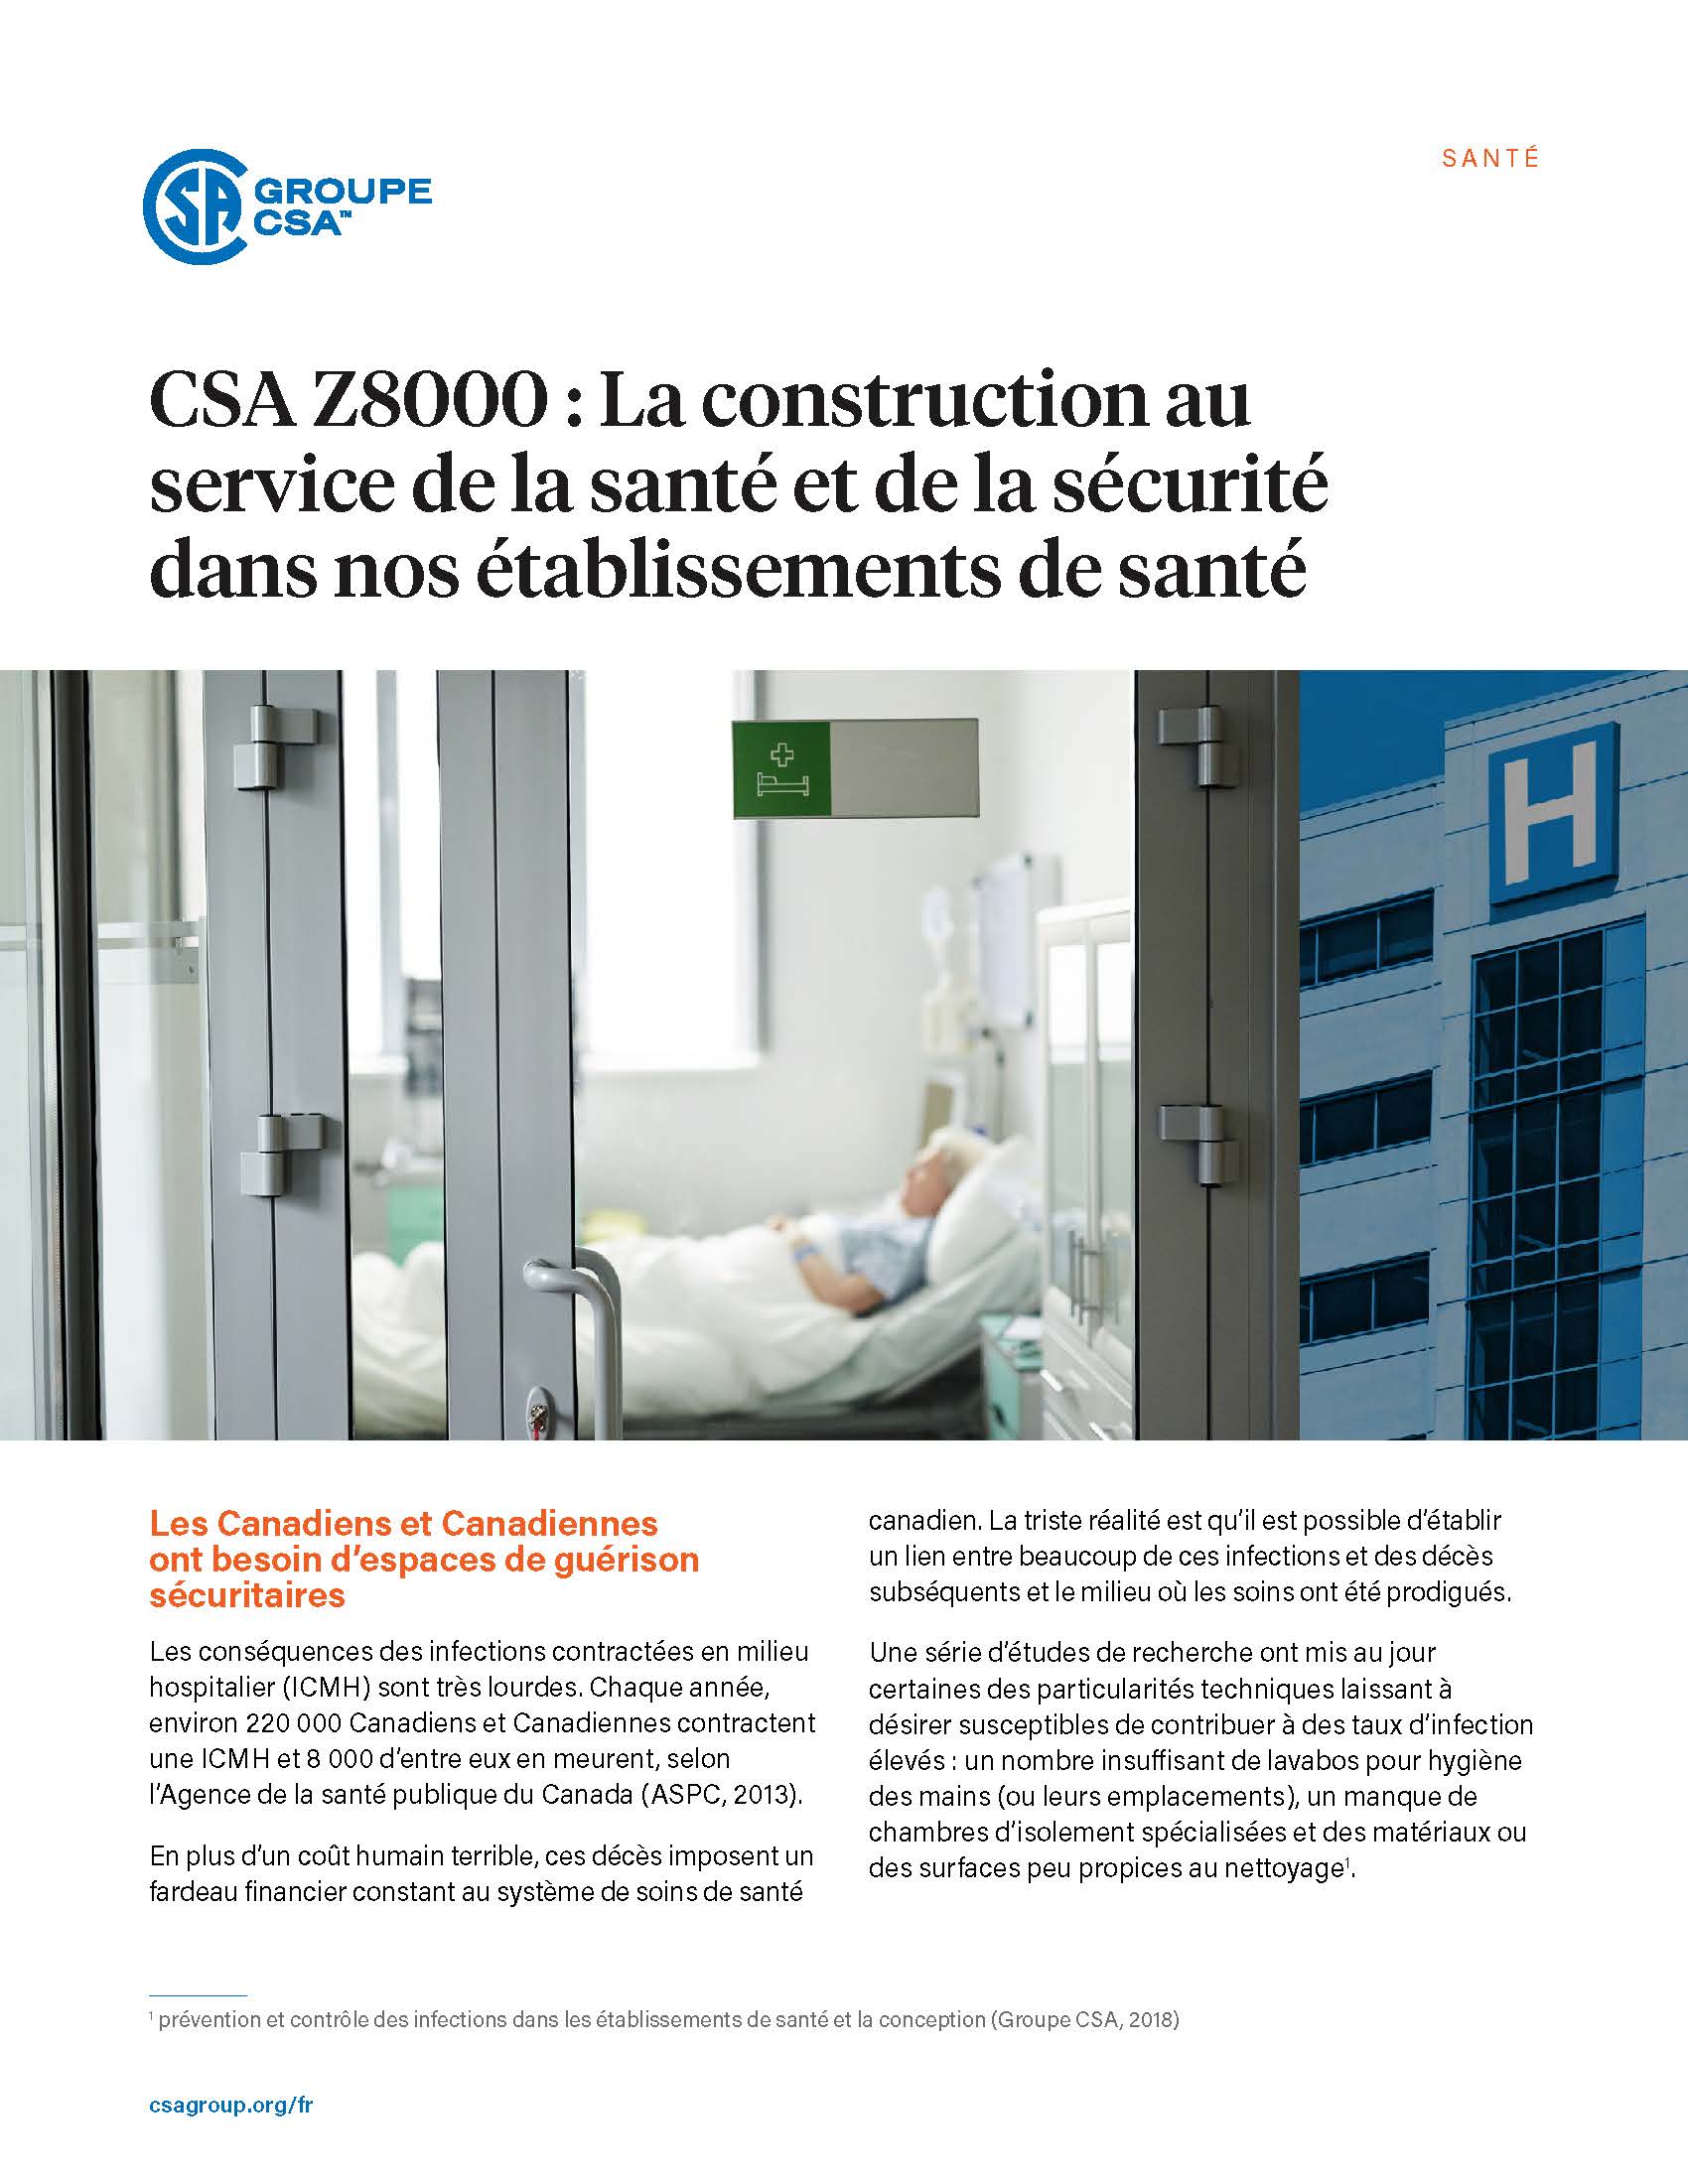 CSA Z8000 : La construction au service de la santé et de la sécurité dans nos établissements de santé